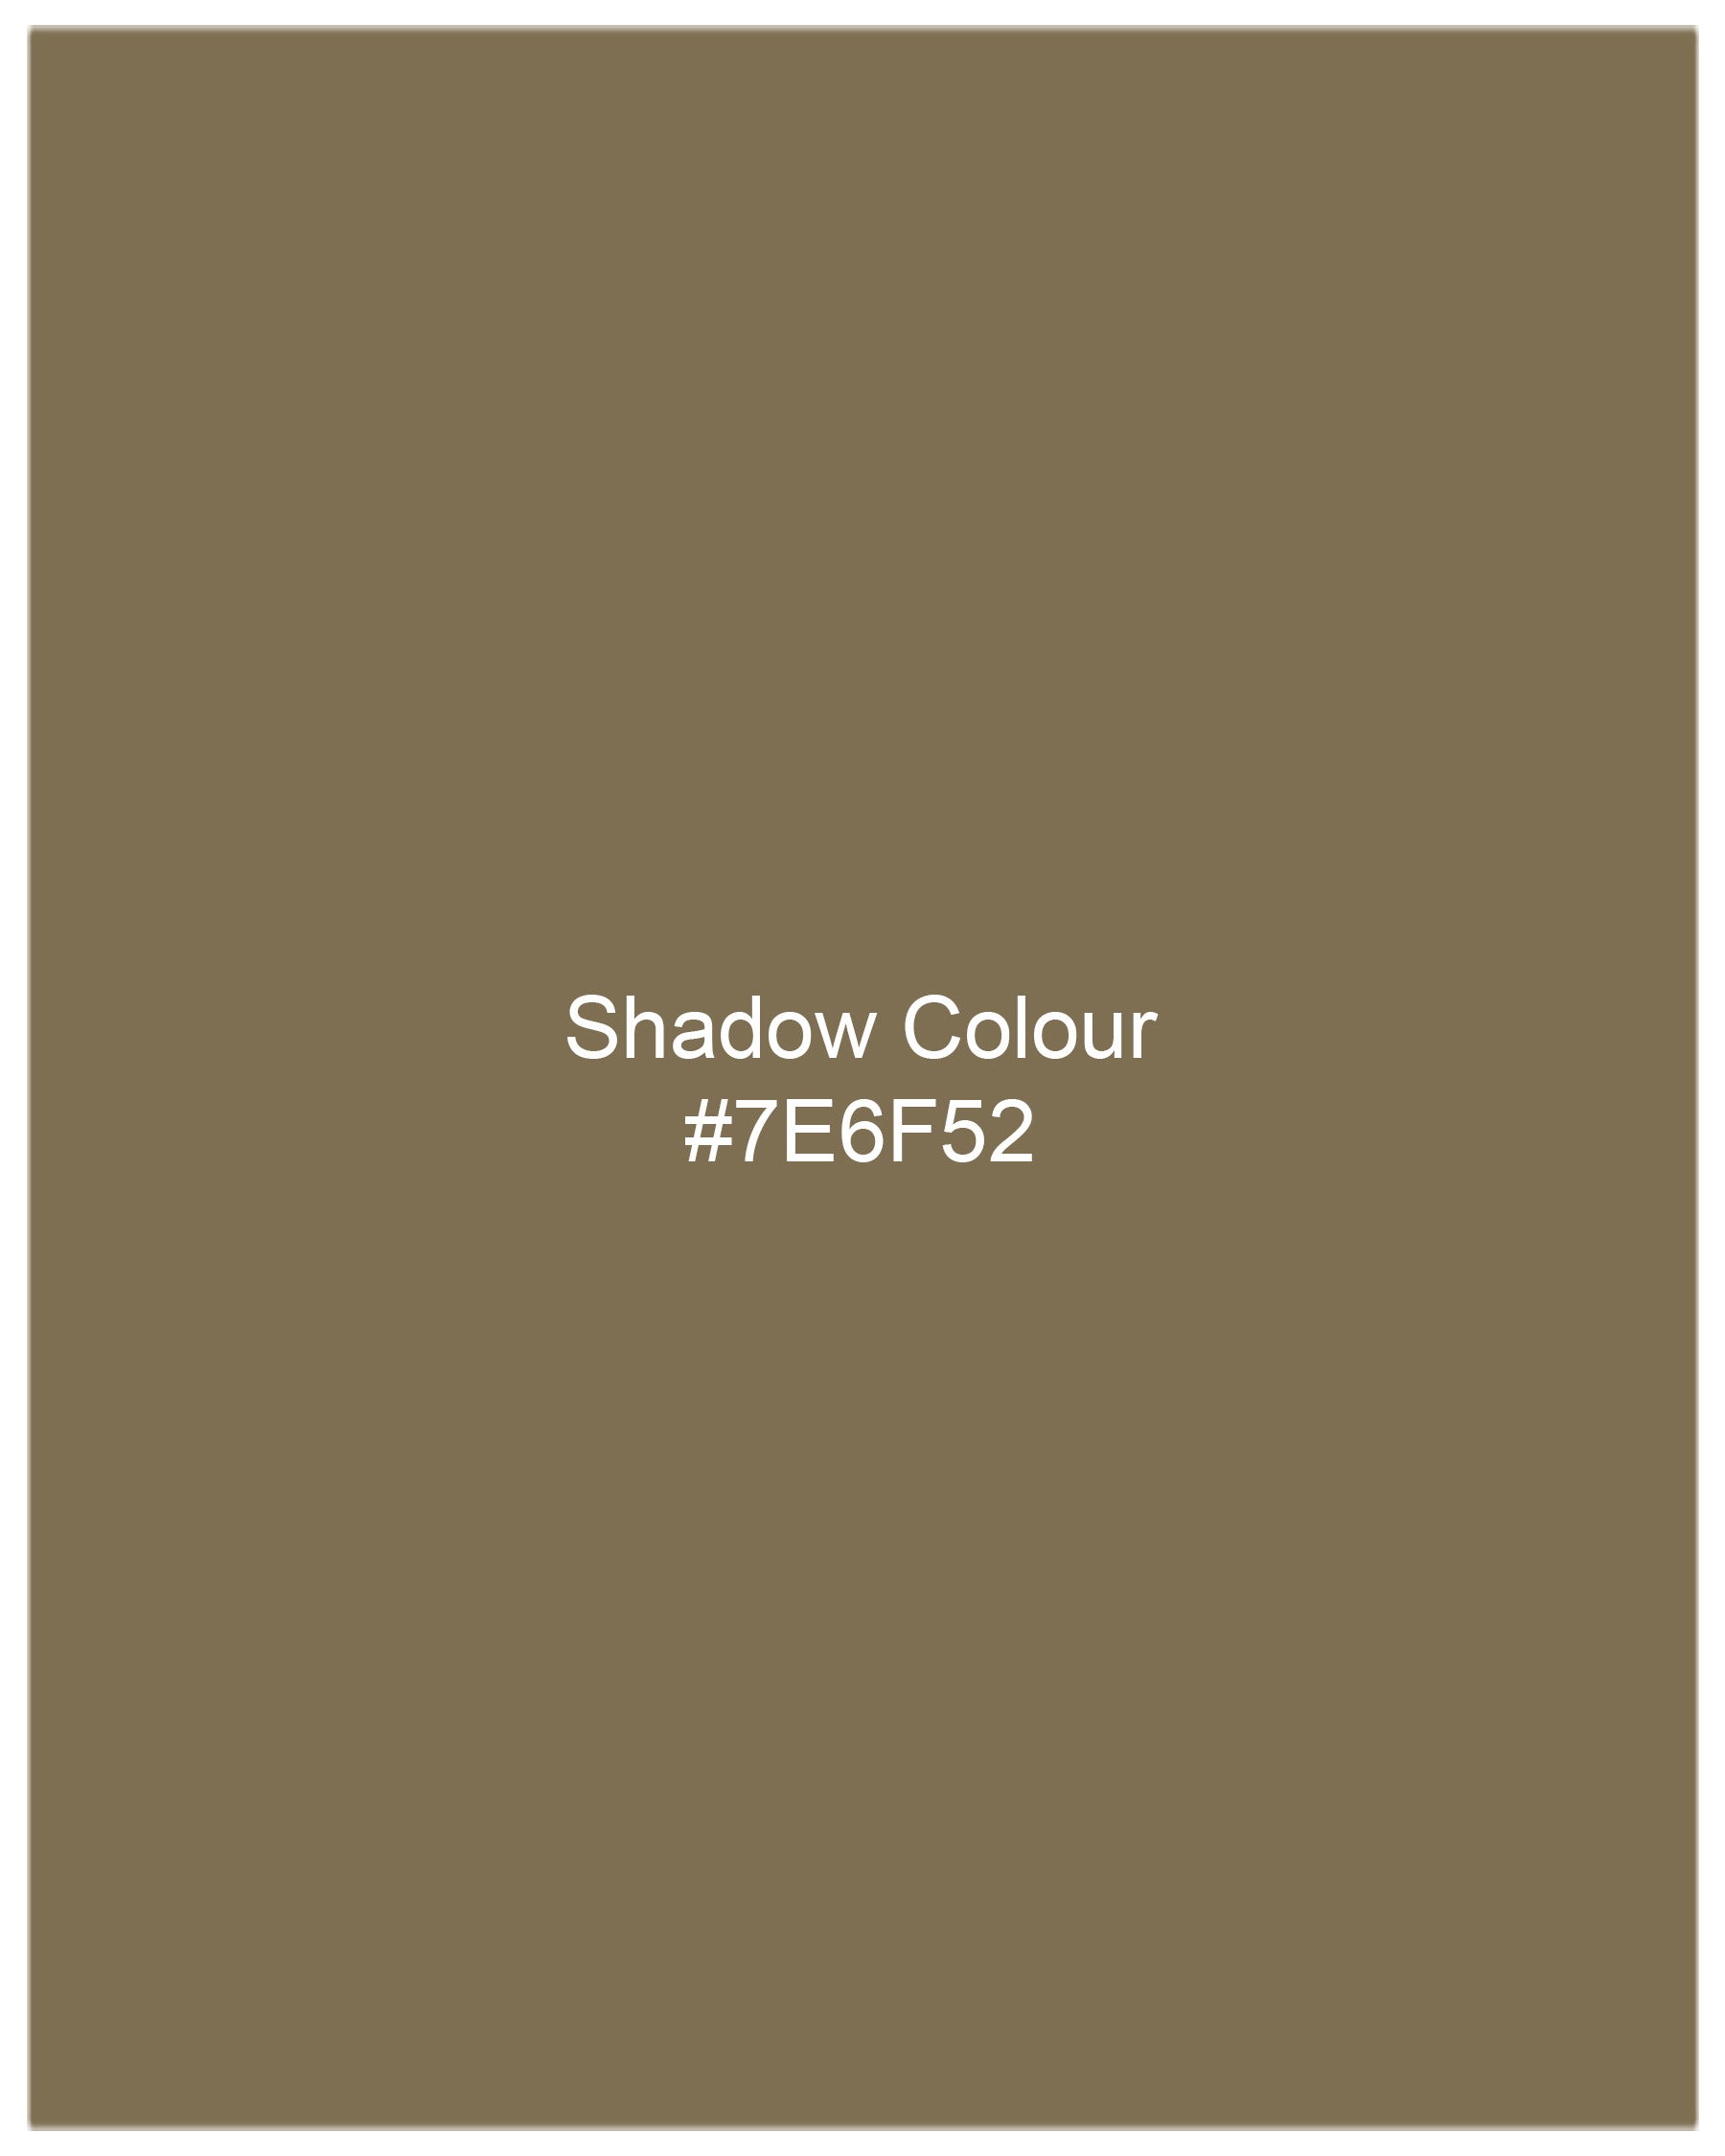 Shadow Brown Textured Nehru Jacket WC1974-36, WC1974-38, WC1974-40, WC1974-42, WC1974-44, WC1974-46, WC1974-48, WC1974-50, WC1974-52, WC1974-54, WC1974-56, WC1974-58, WC1974-60